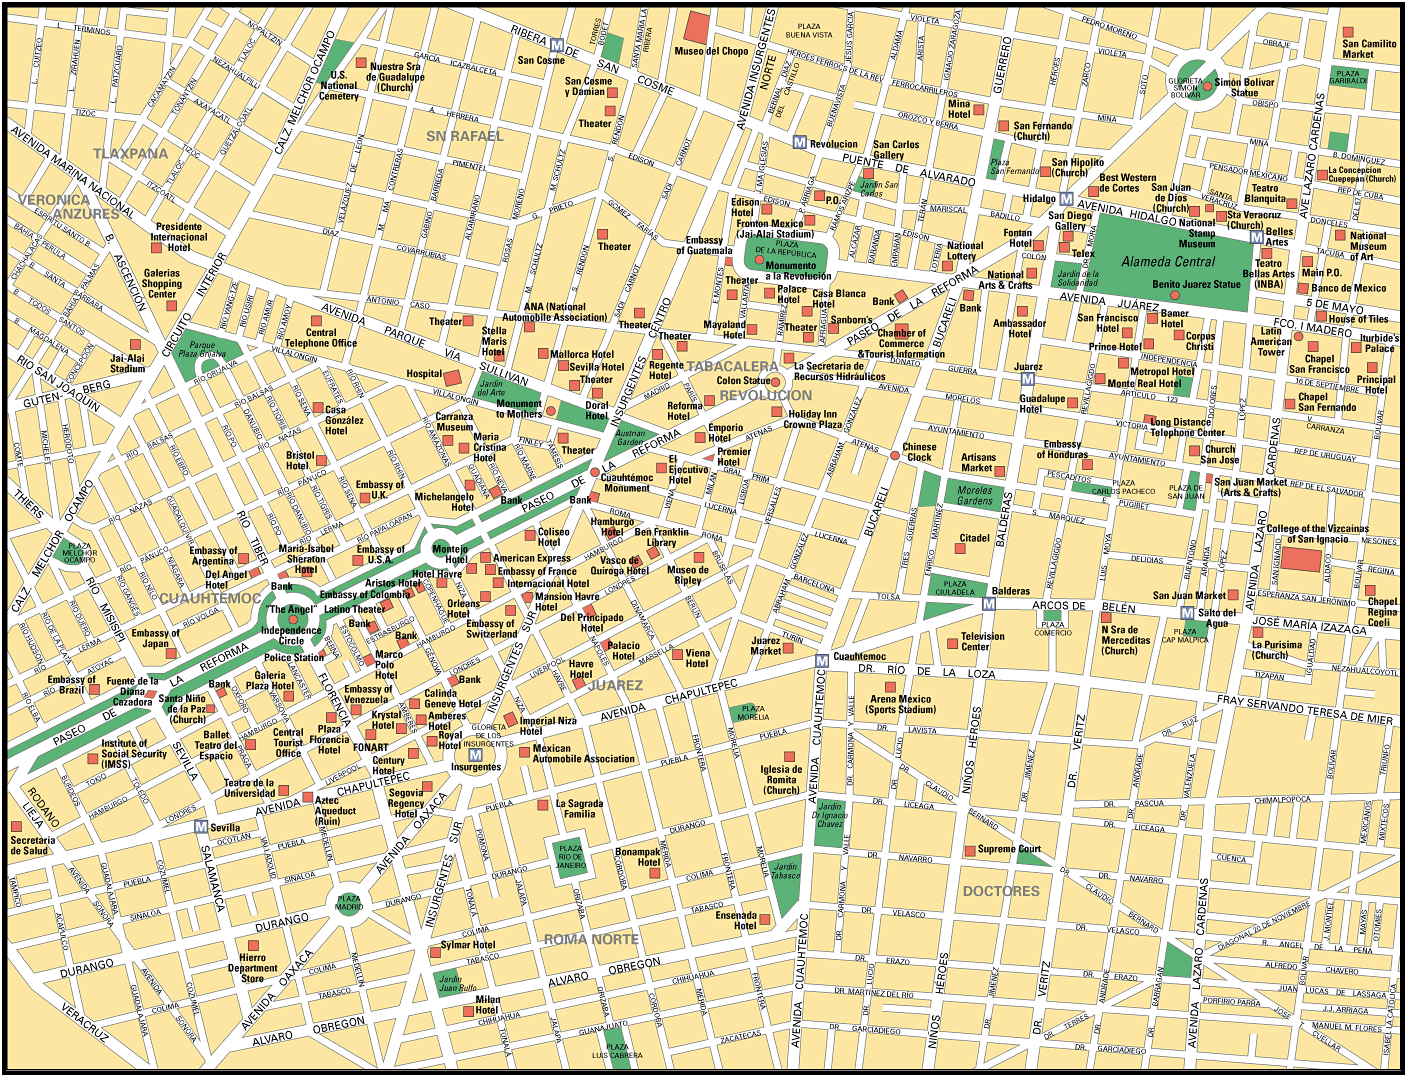 Mapa de Ciudad de México